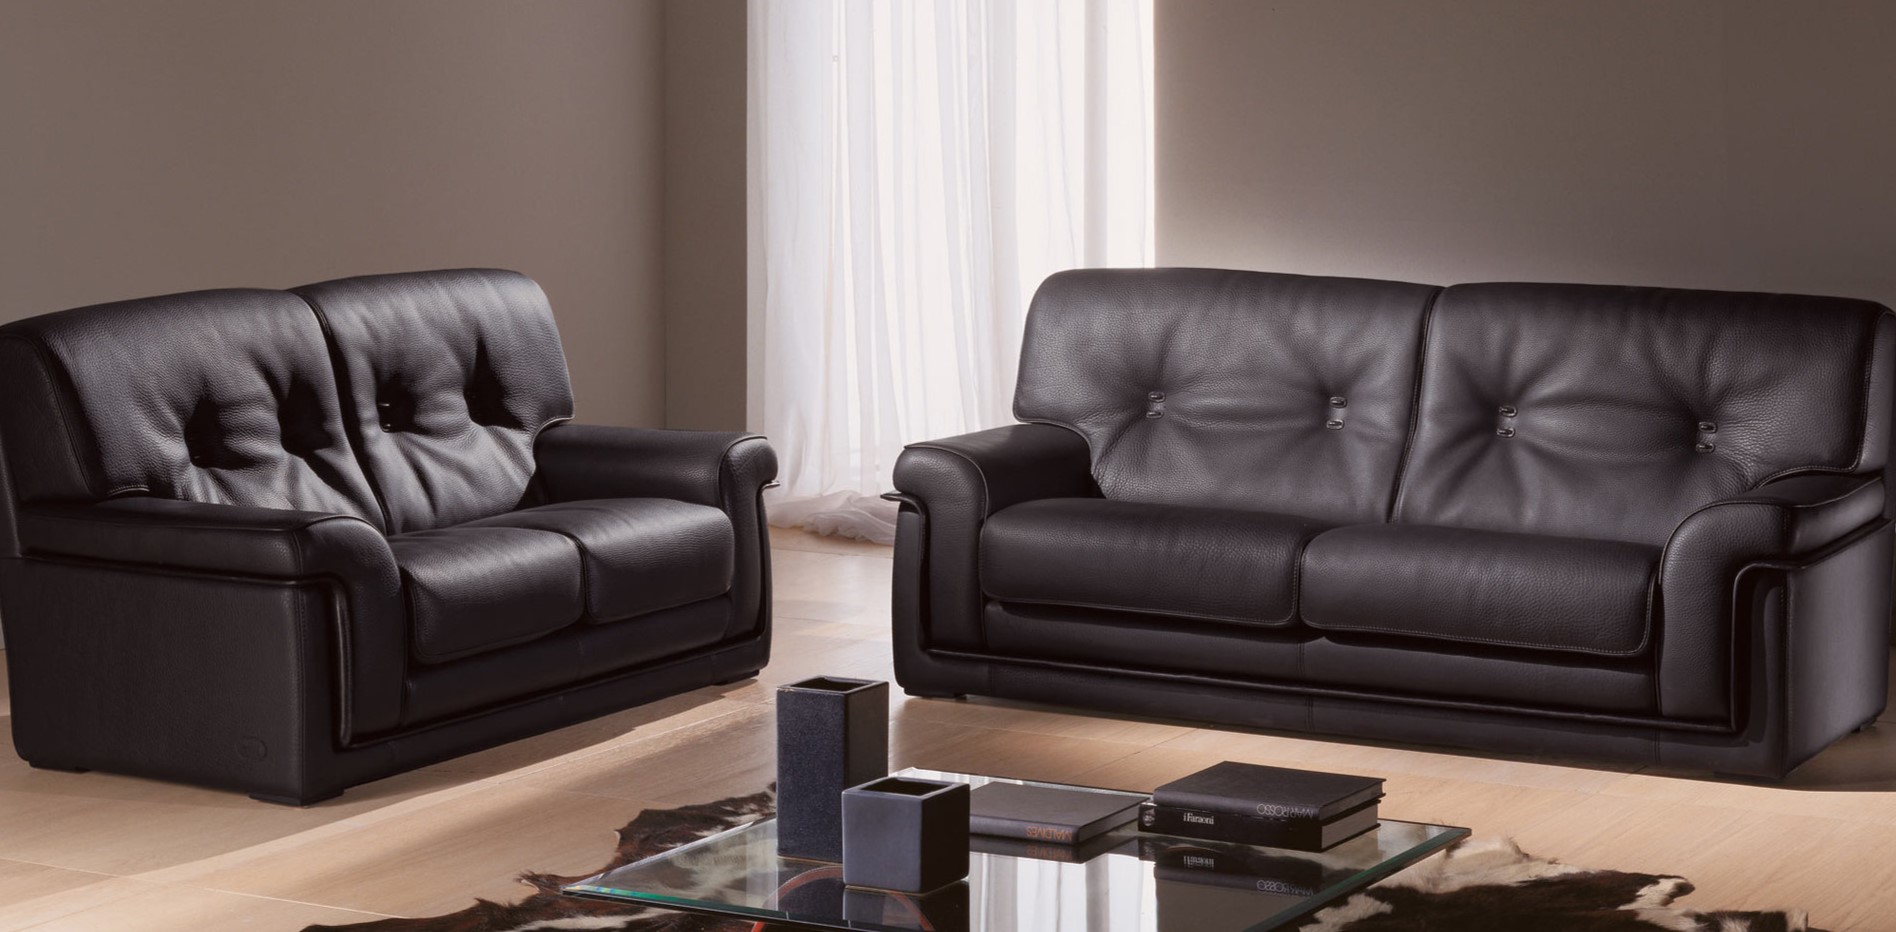 Из двух черных диванов можно создать стильную зону отдыха в гостиной